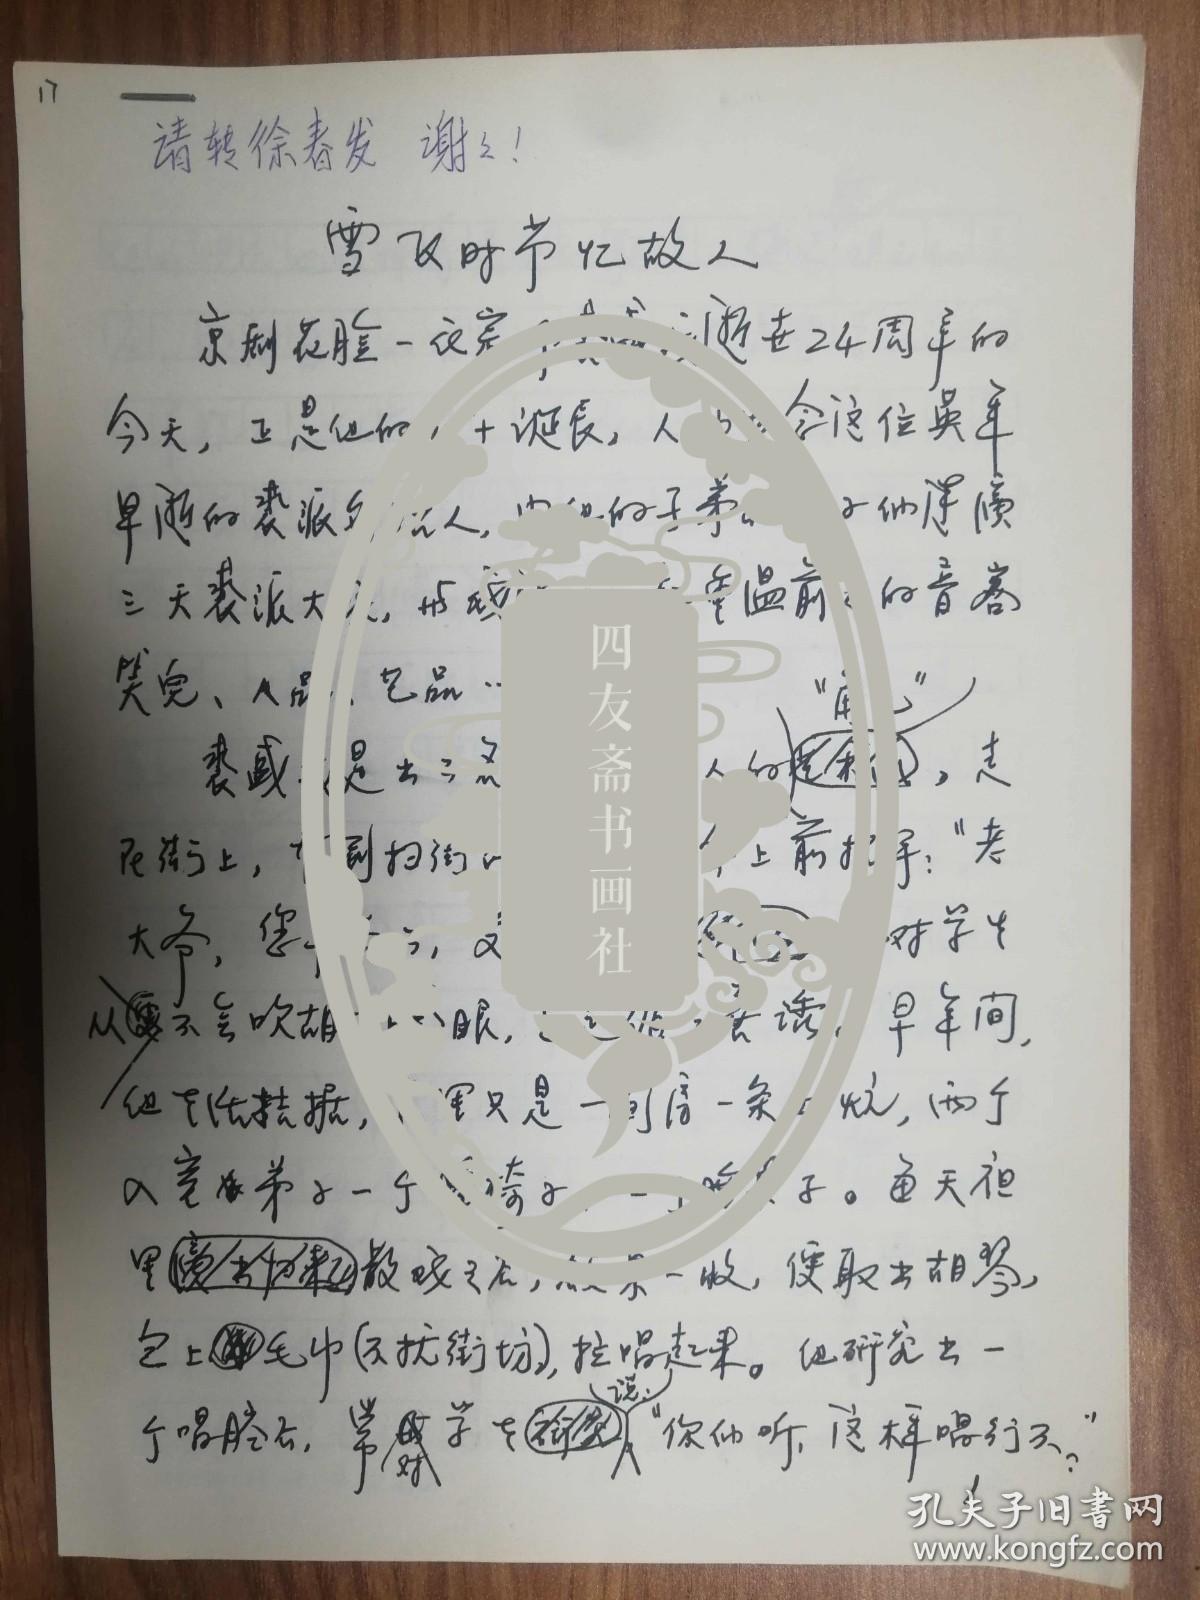 上海《文汇报》社旧藏唐斯复老师发表手稿3页（17保真）